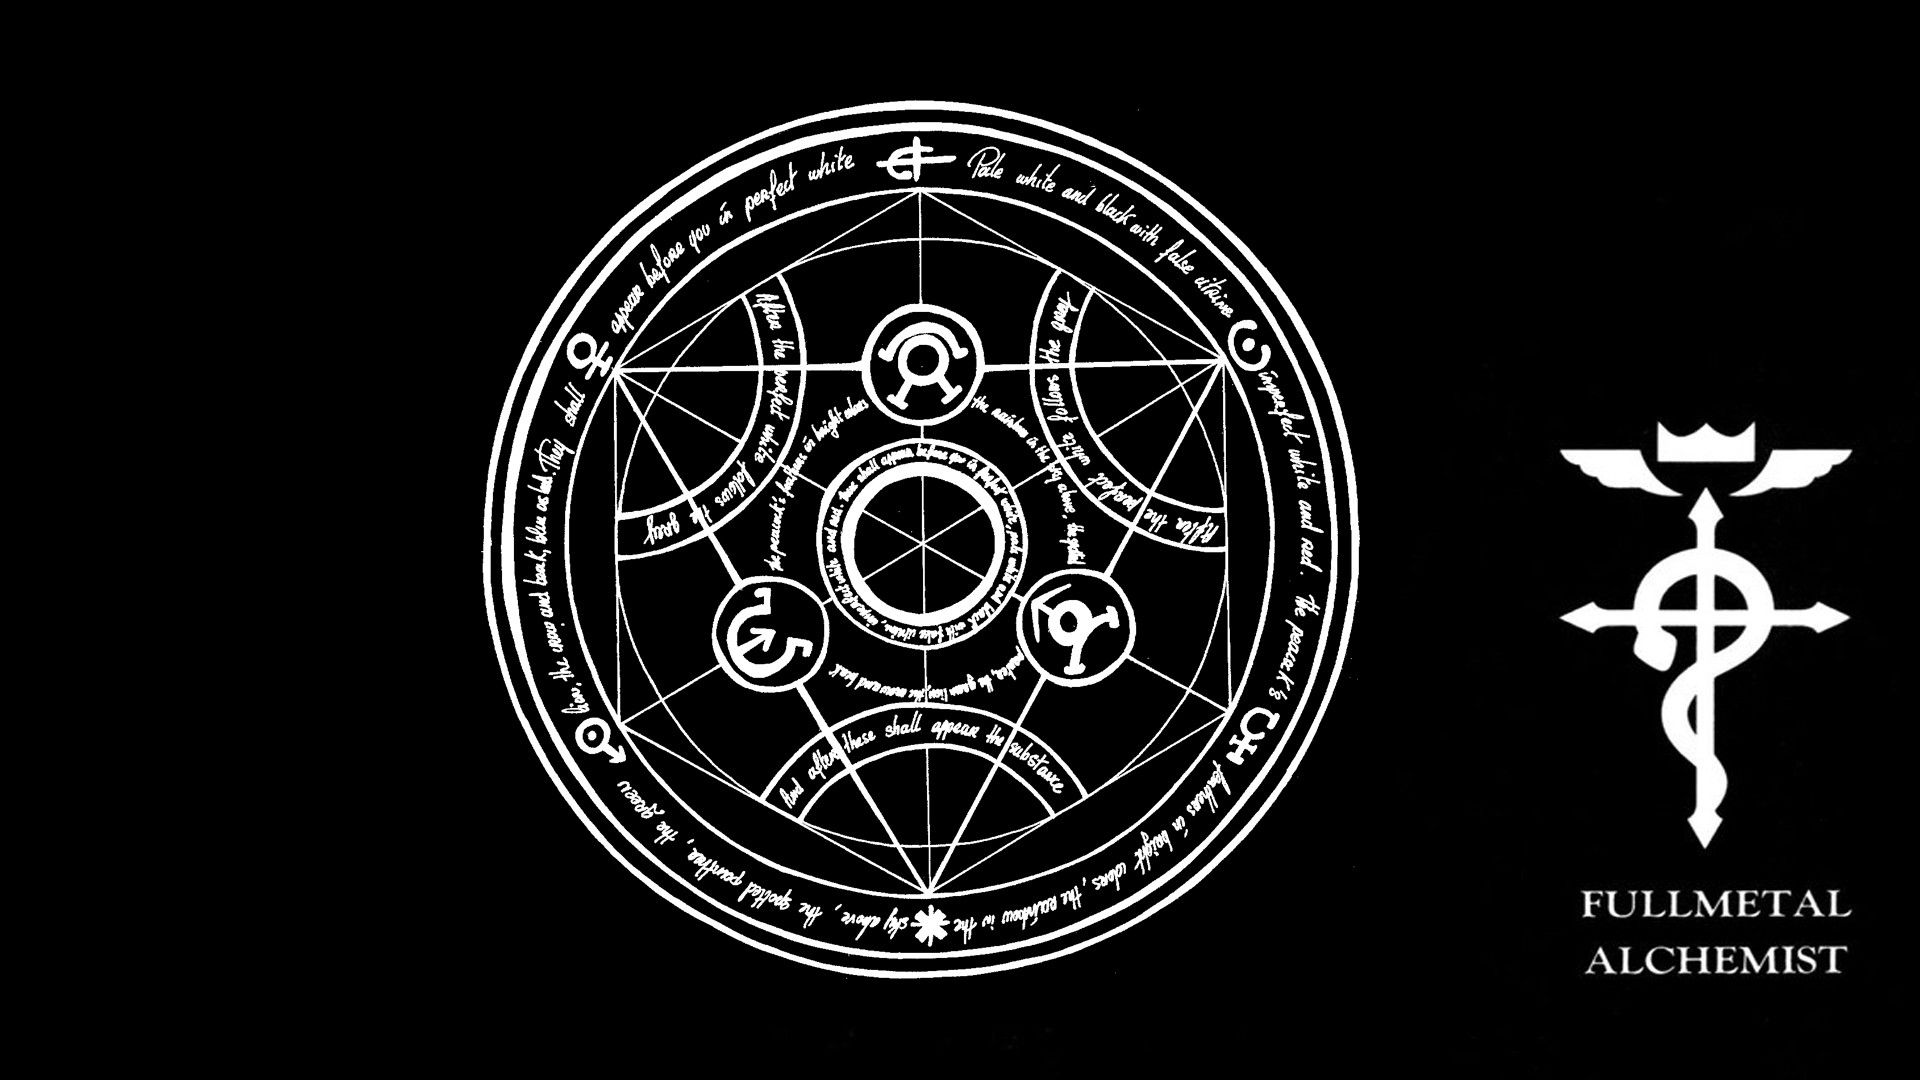 Wallpaper For Fullmetal Alchemist Logo